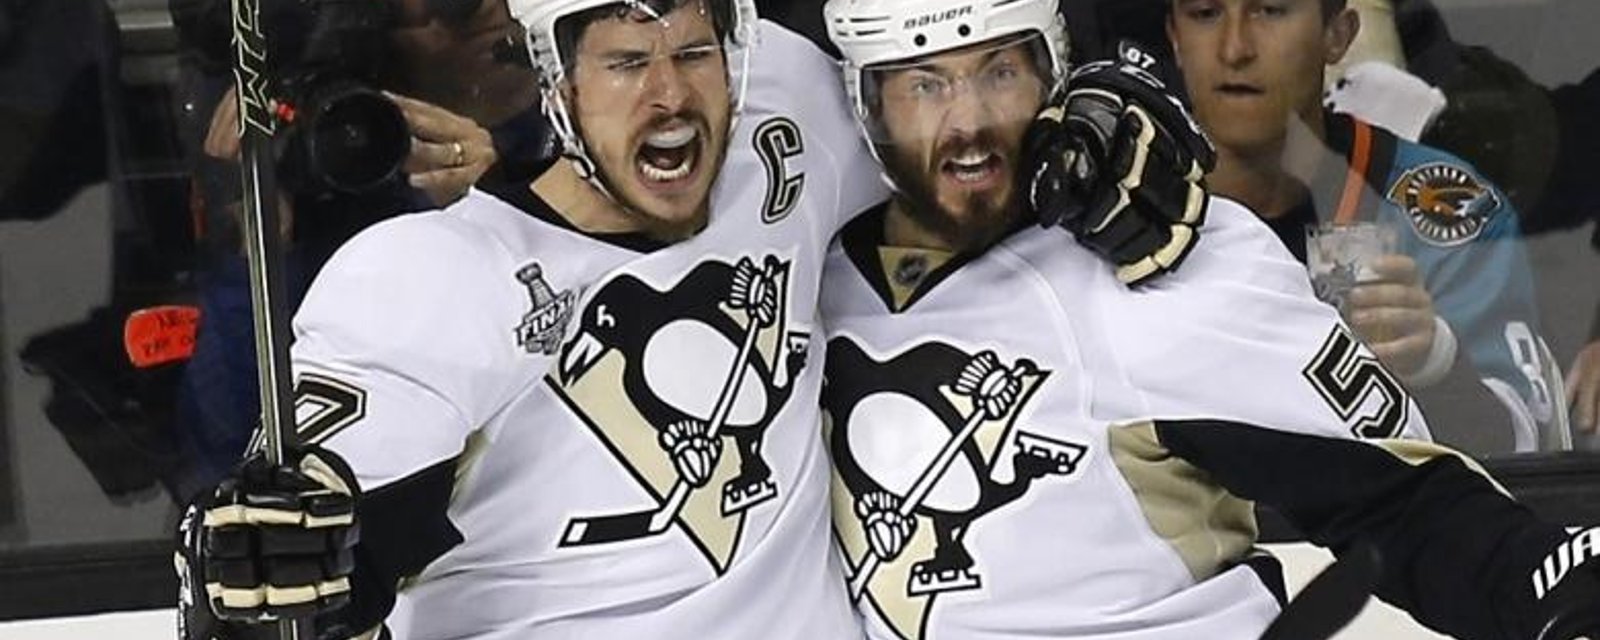 Les Penguins remportent la Coupe Stanley!